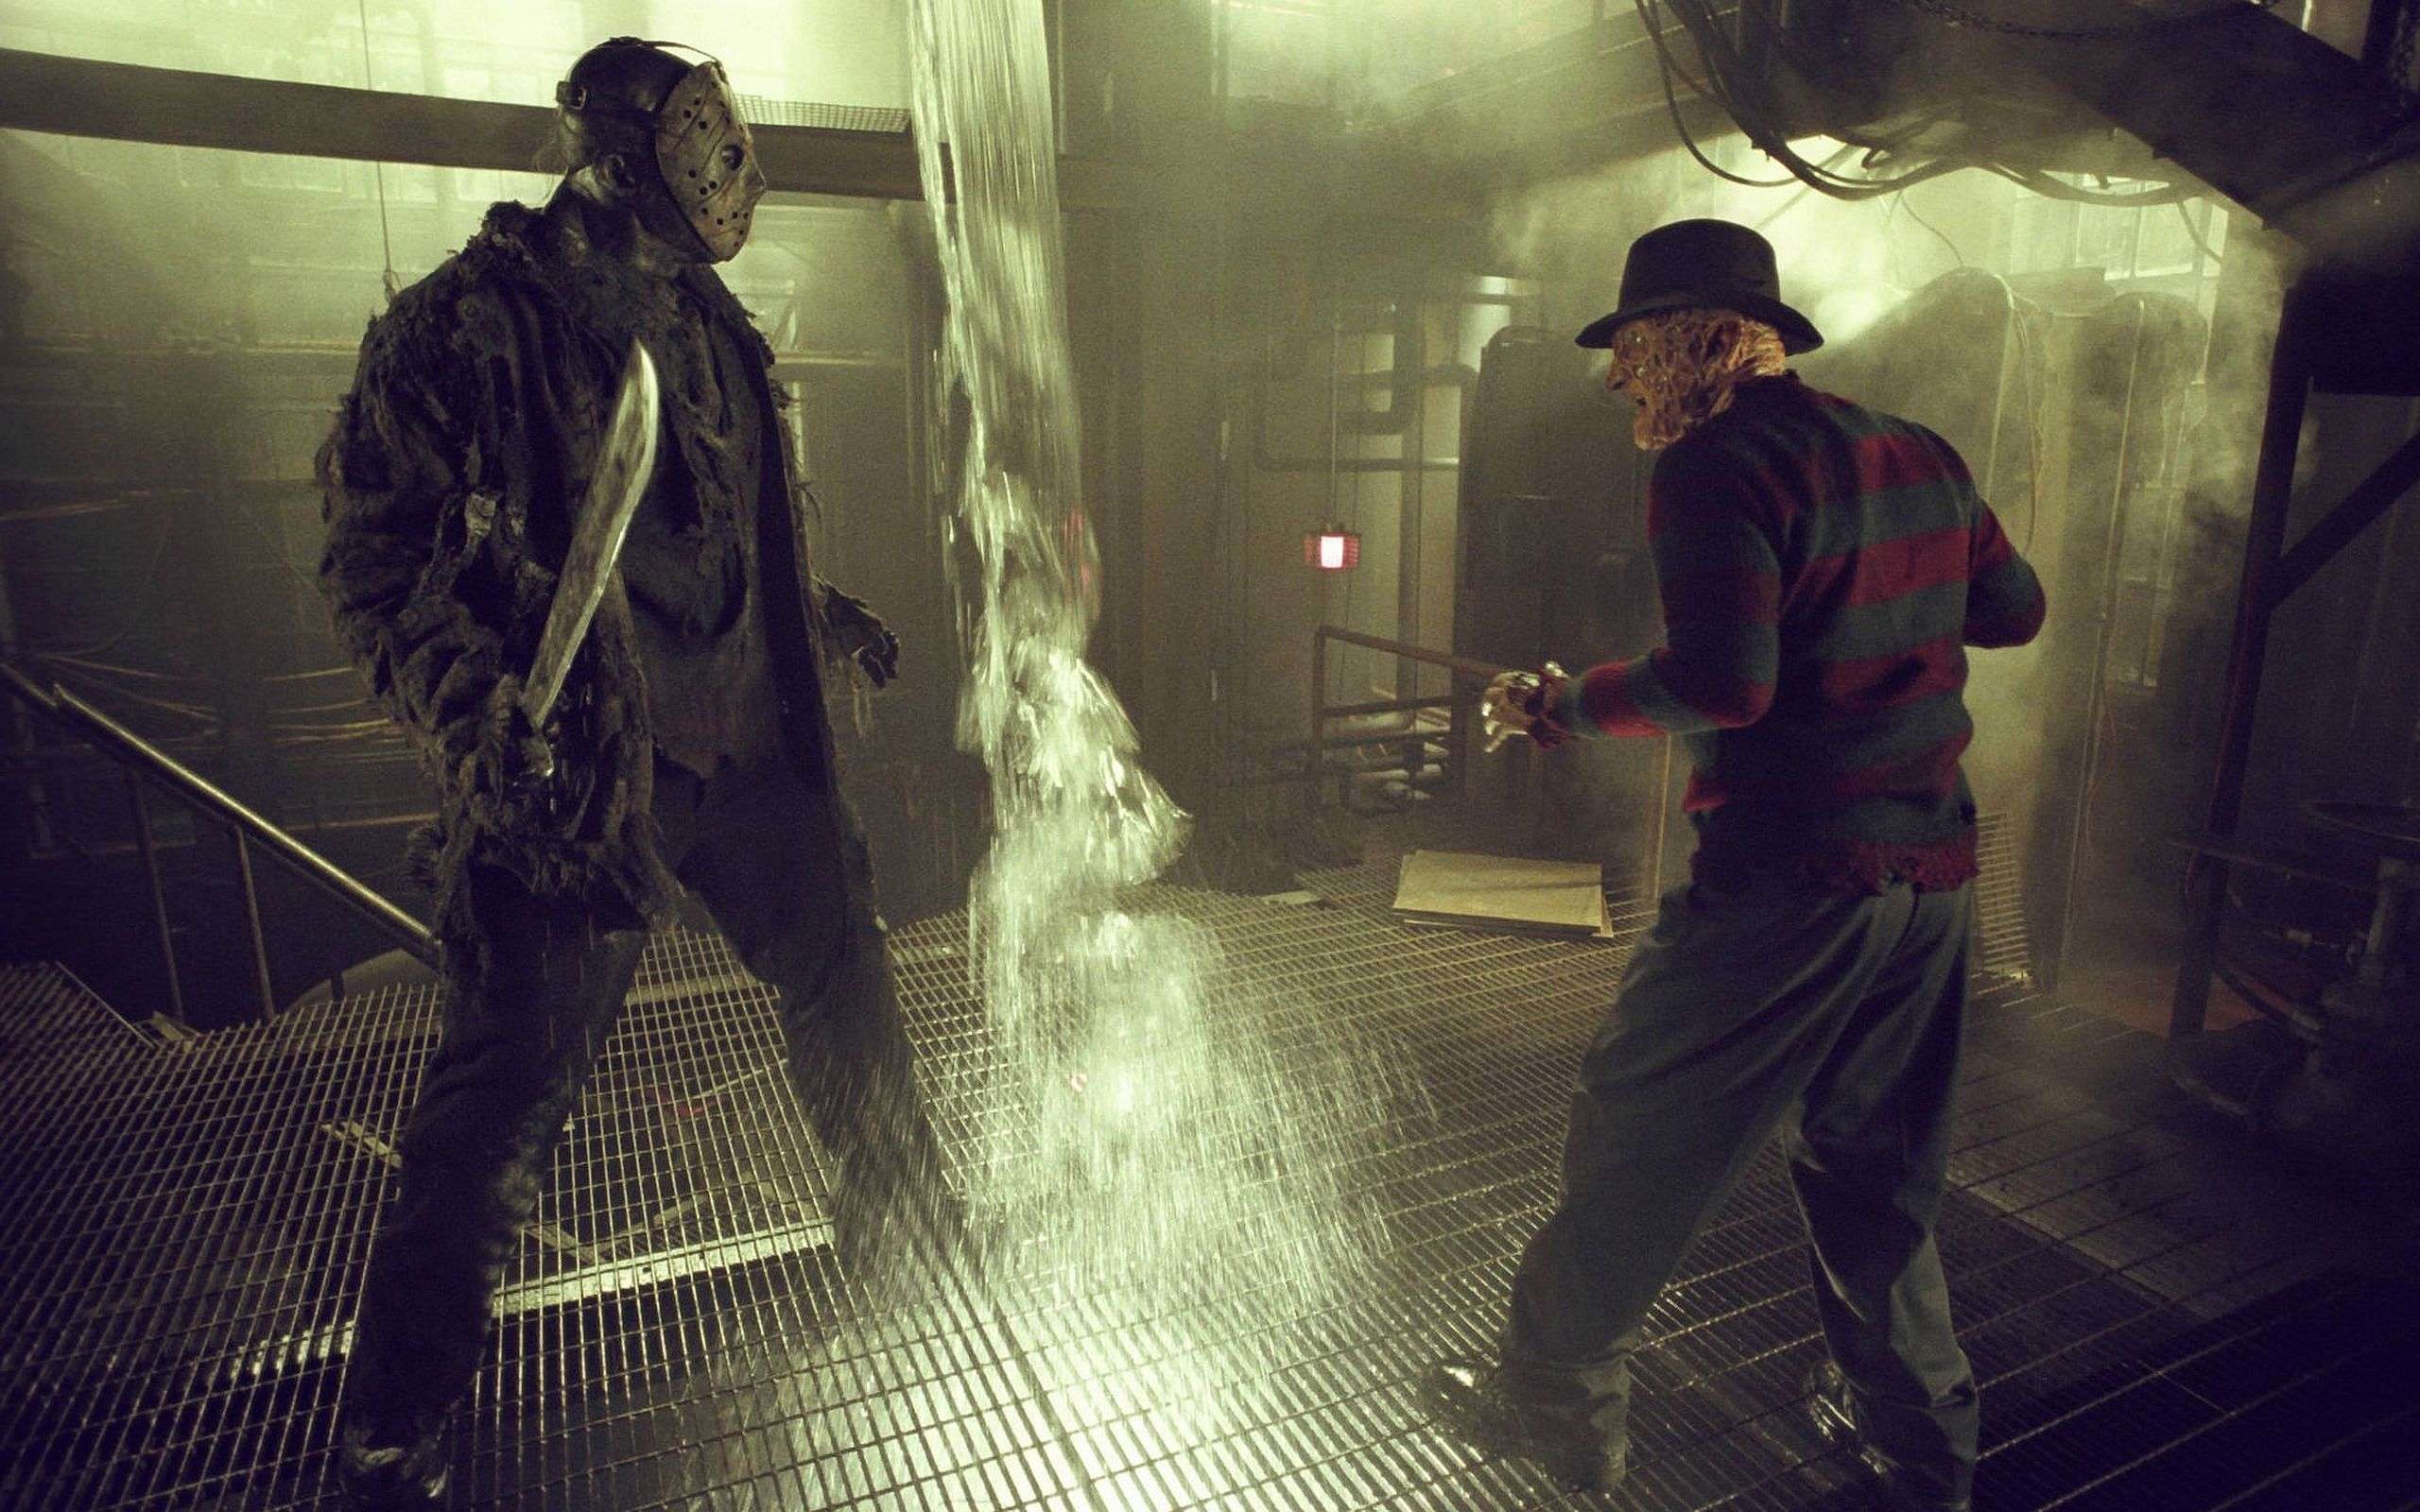 Psychopathic Freddy vs. Psychotic Jason (2003)